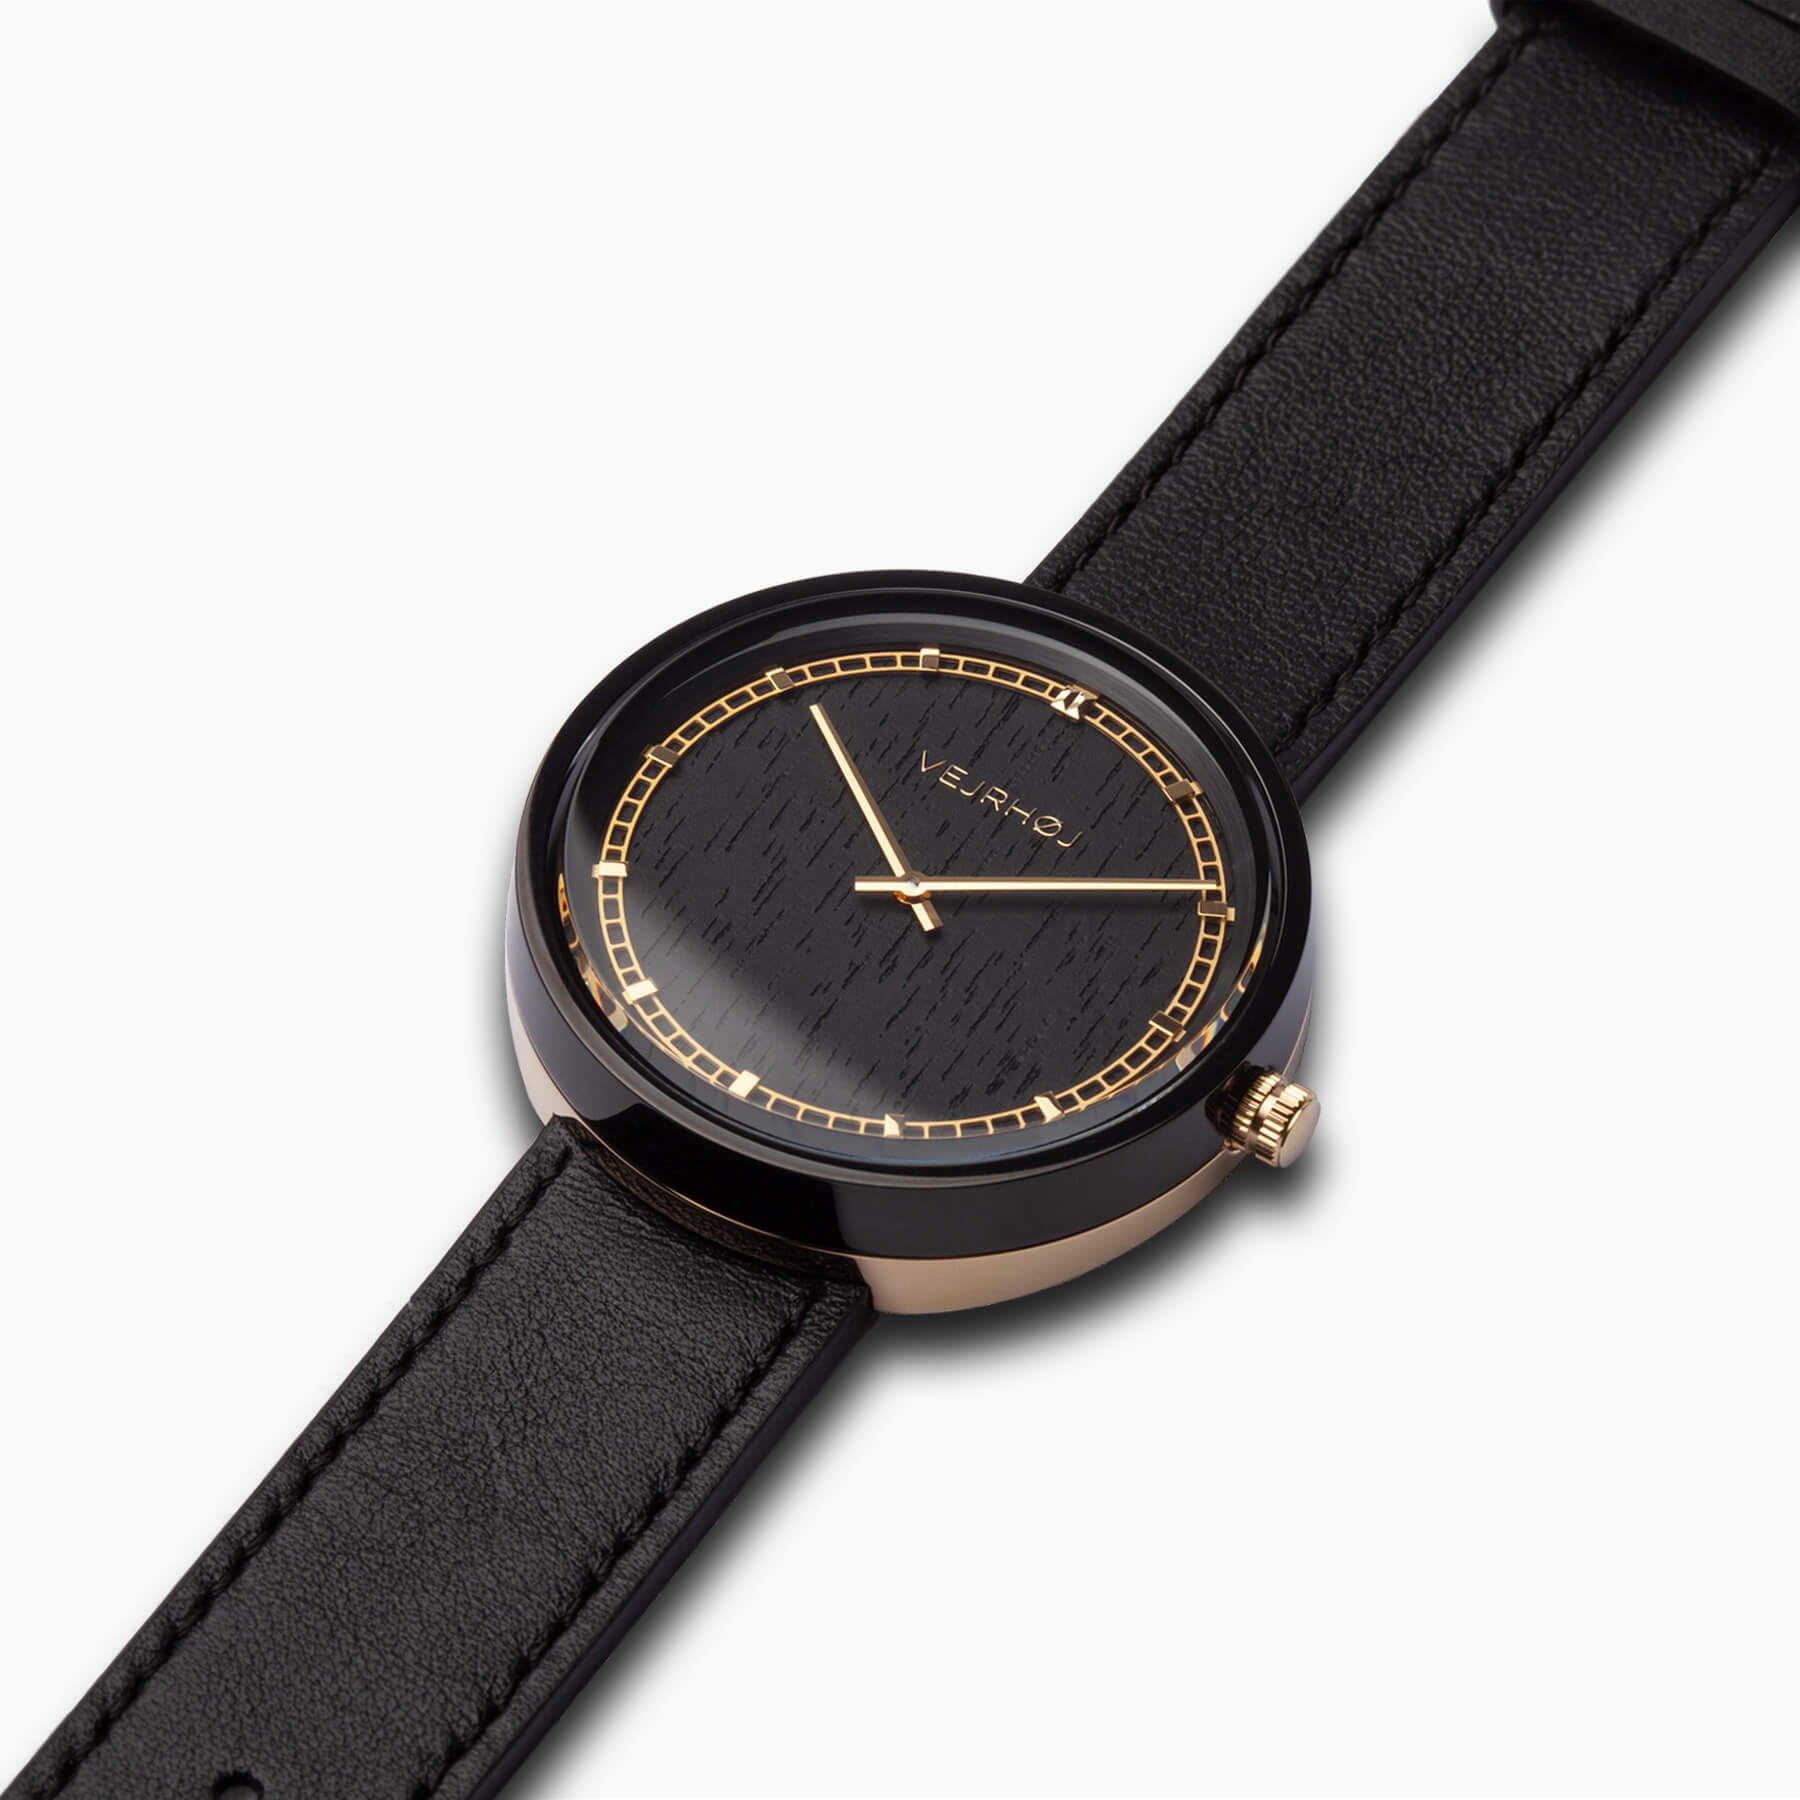 VEJRHØJ men's wooden watch with black dial and golden hands